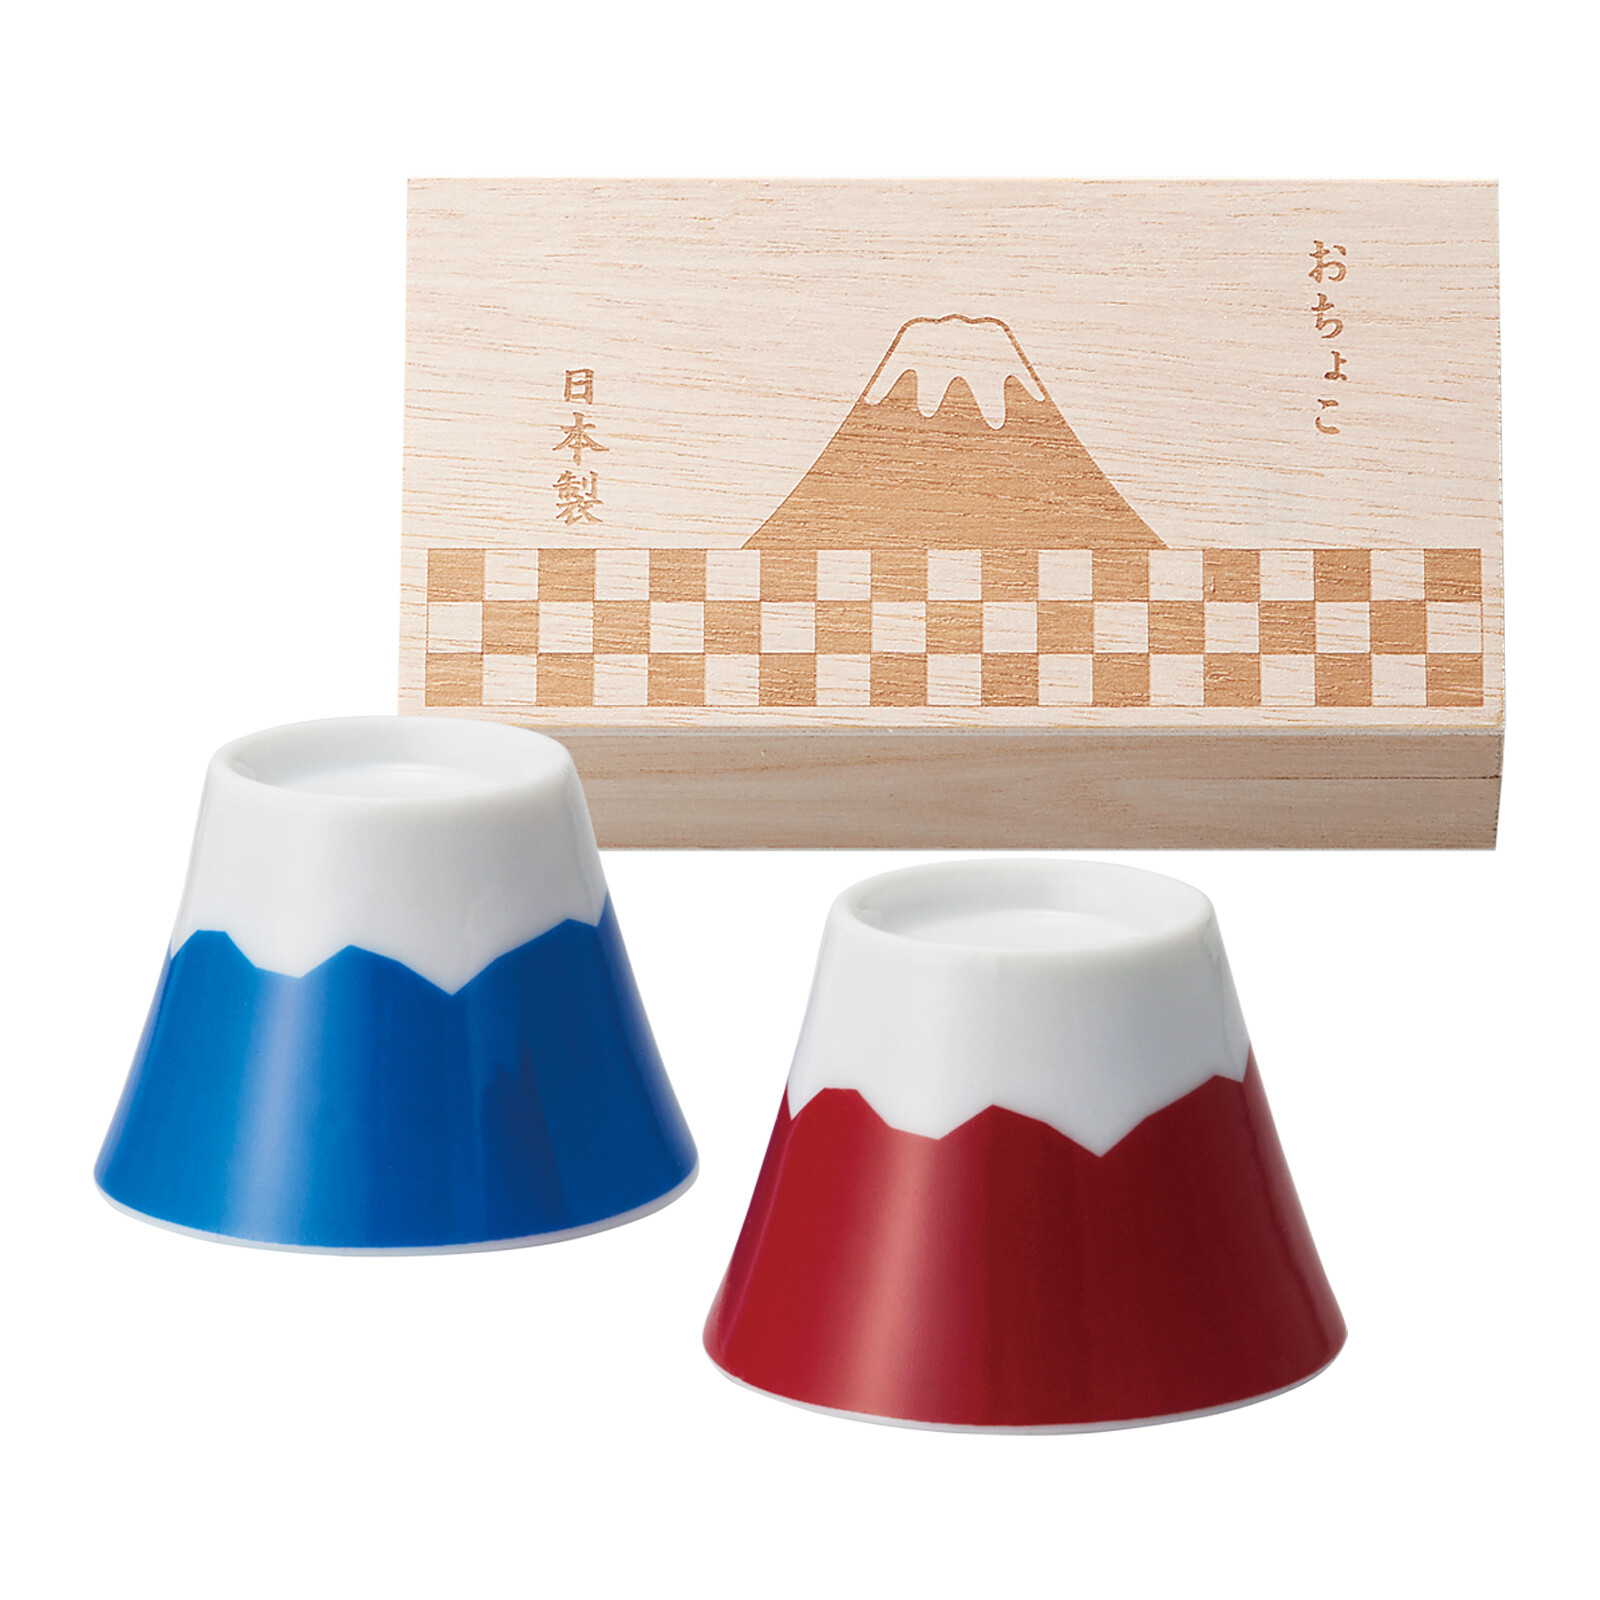 富士山おちょこで乾杯 富士山 木箱入ペアおちょこの商品ページ 卸 仕入れサイト スーパーデリバリー